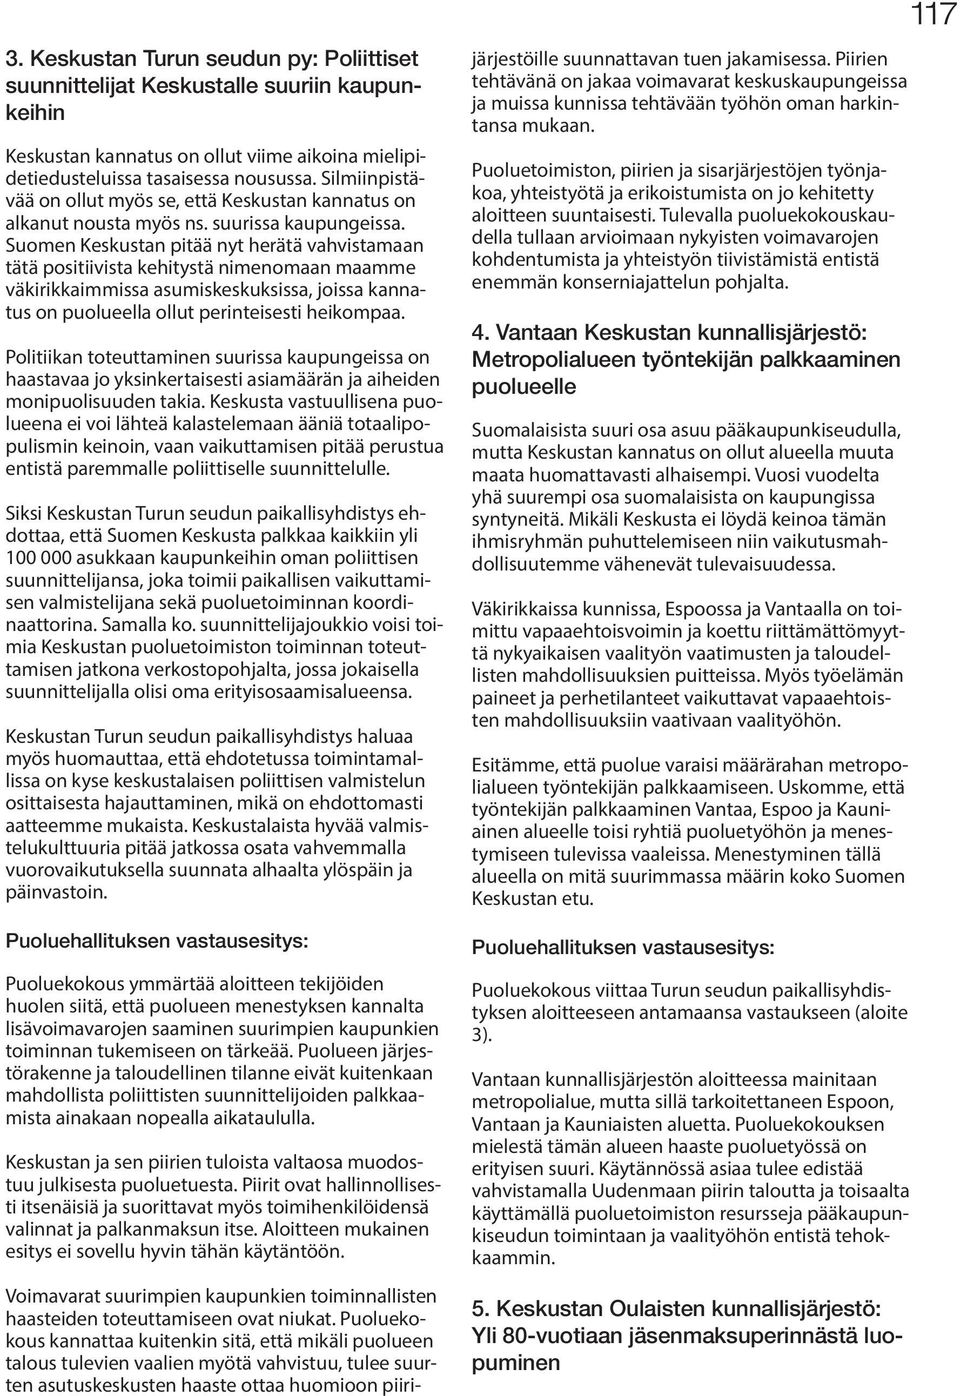 Suomen Keskustan pitää nyt herätä vahvistamaan tätä positiivista kehitystä nimenomaan maamme väkirikkaimmissa asumiskeskuksissa, joissa kannatus on puolueella ollut perinteisesti heikompaa.